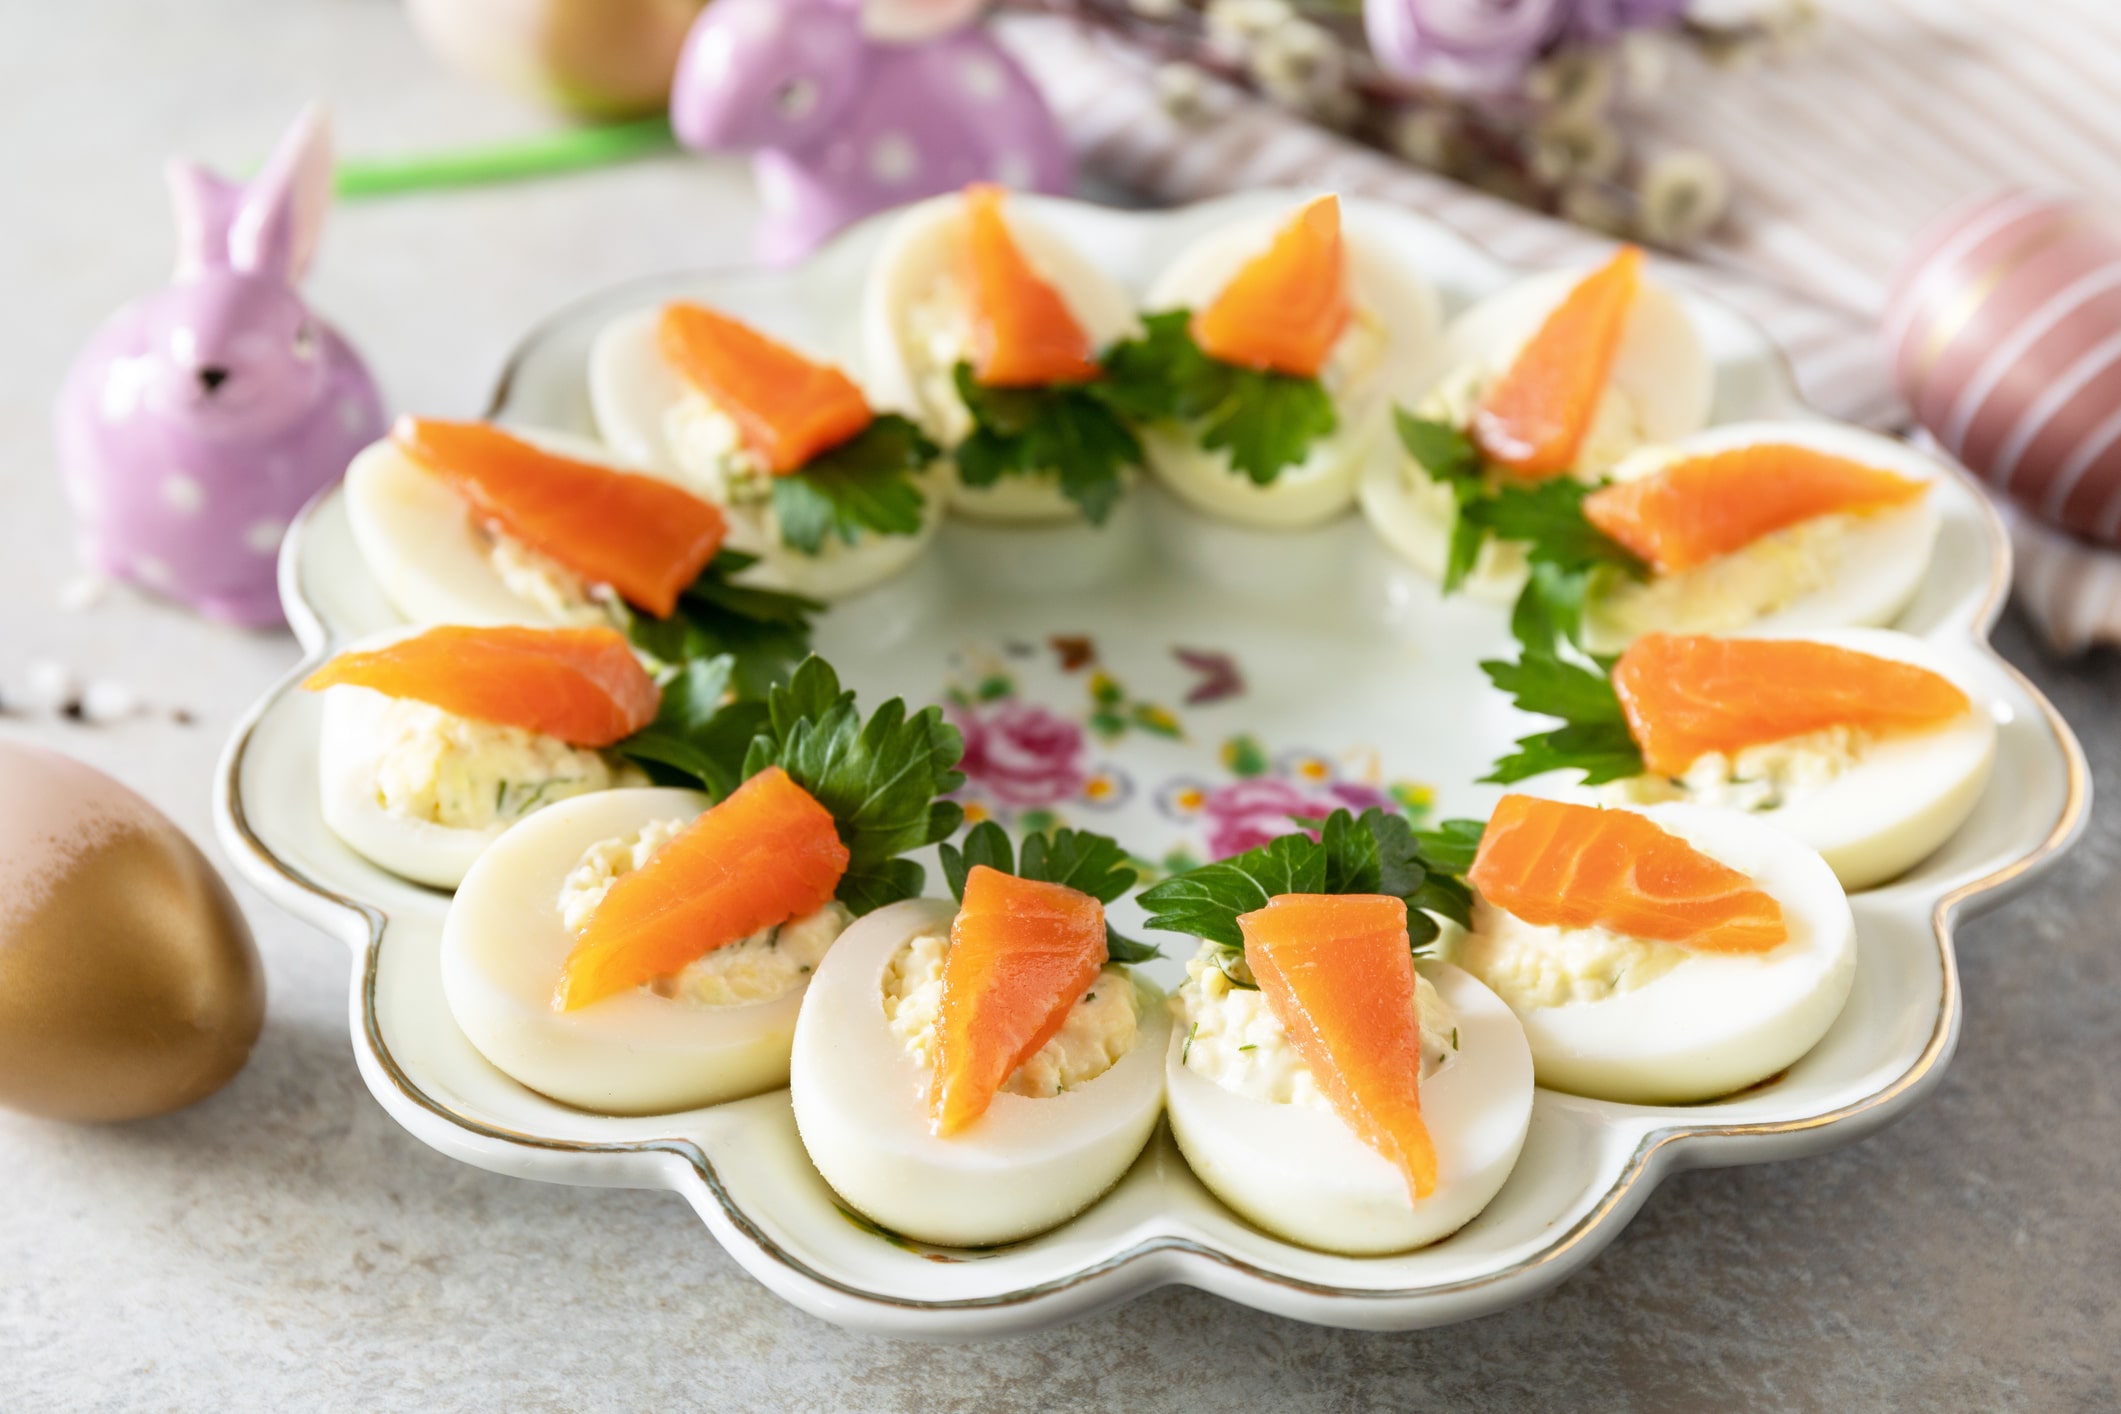 Des oeufs farcis au saumon fumé atlantique de l'épicier, décorés comme des carottes pour un brunch de Pâques